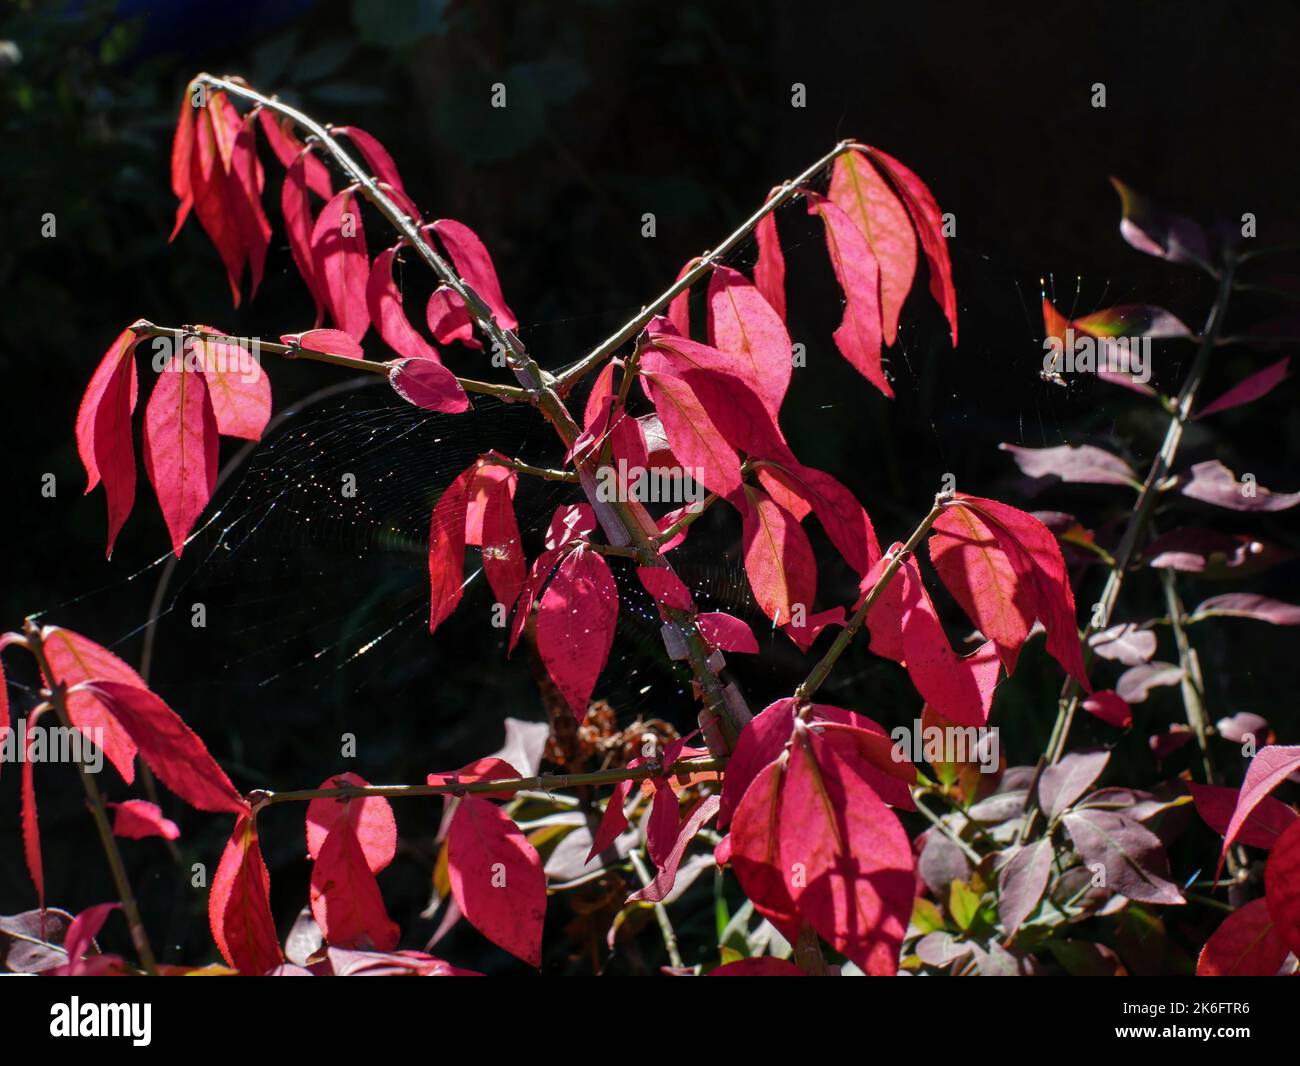 Ast von geflügeltem Spindelbaum, Fusain, (euonymus alatus) mit seiner herbstlich rosa Farbe, auf dunklem Grund. Stockfoto